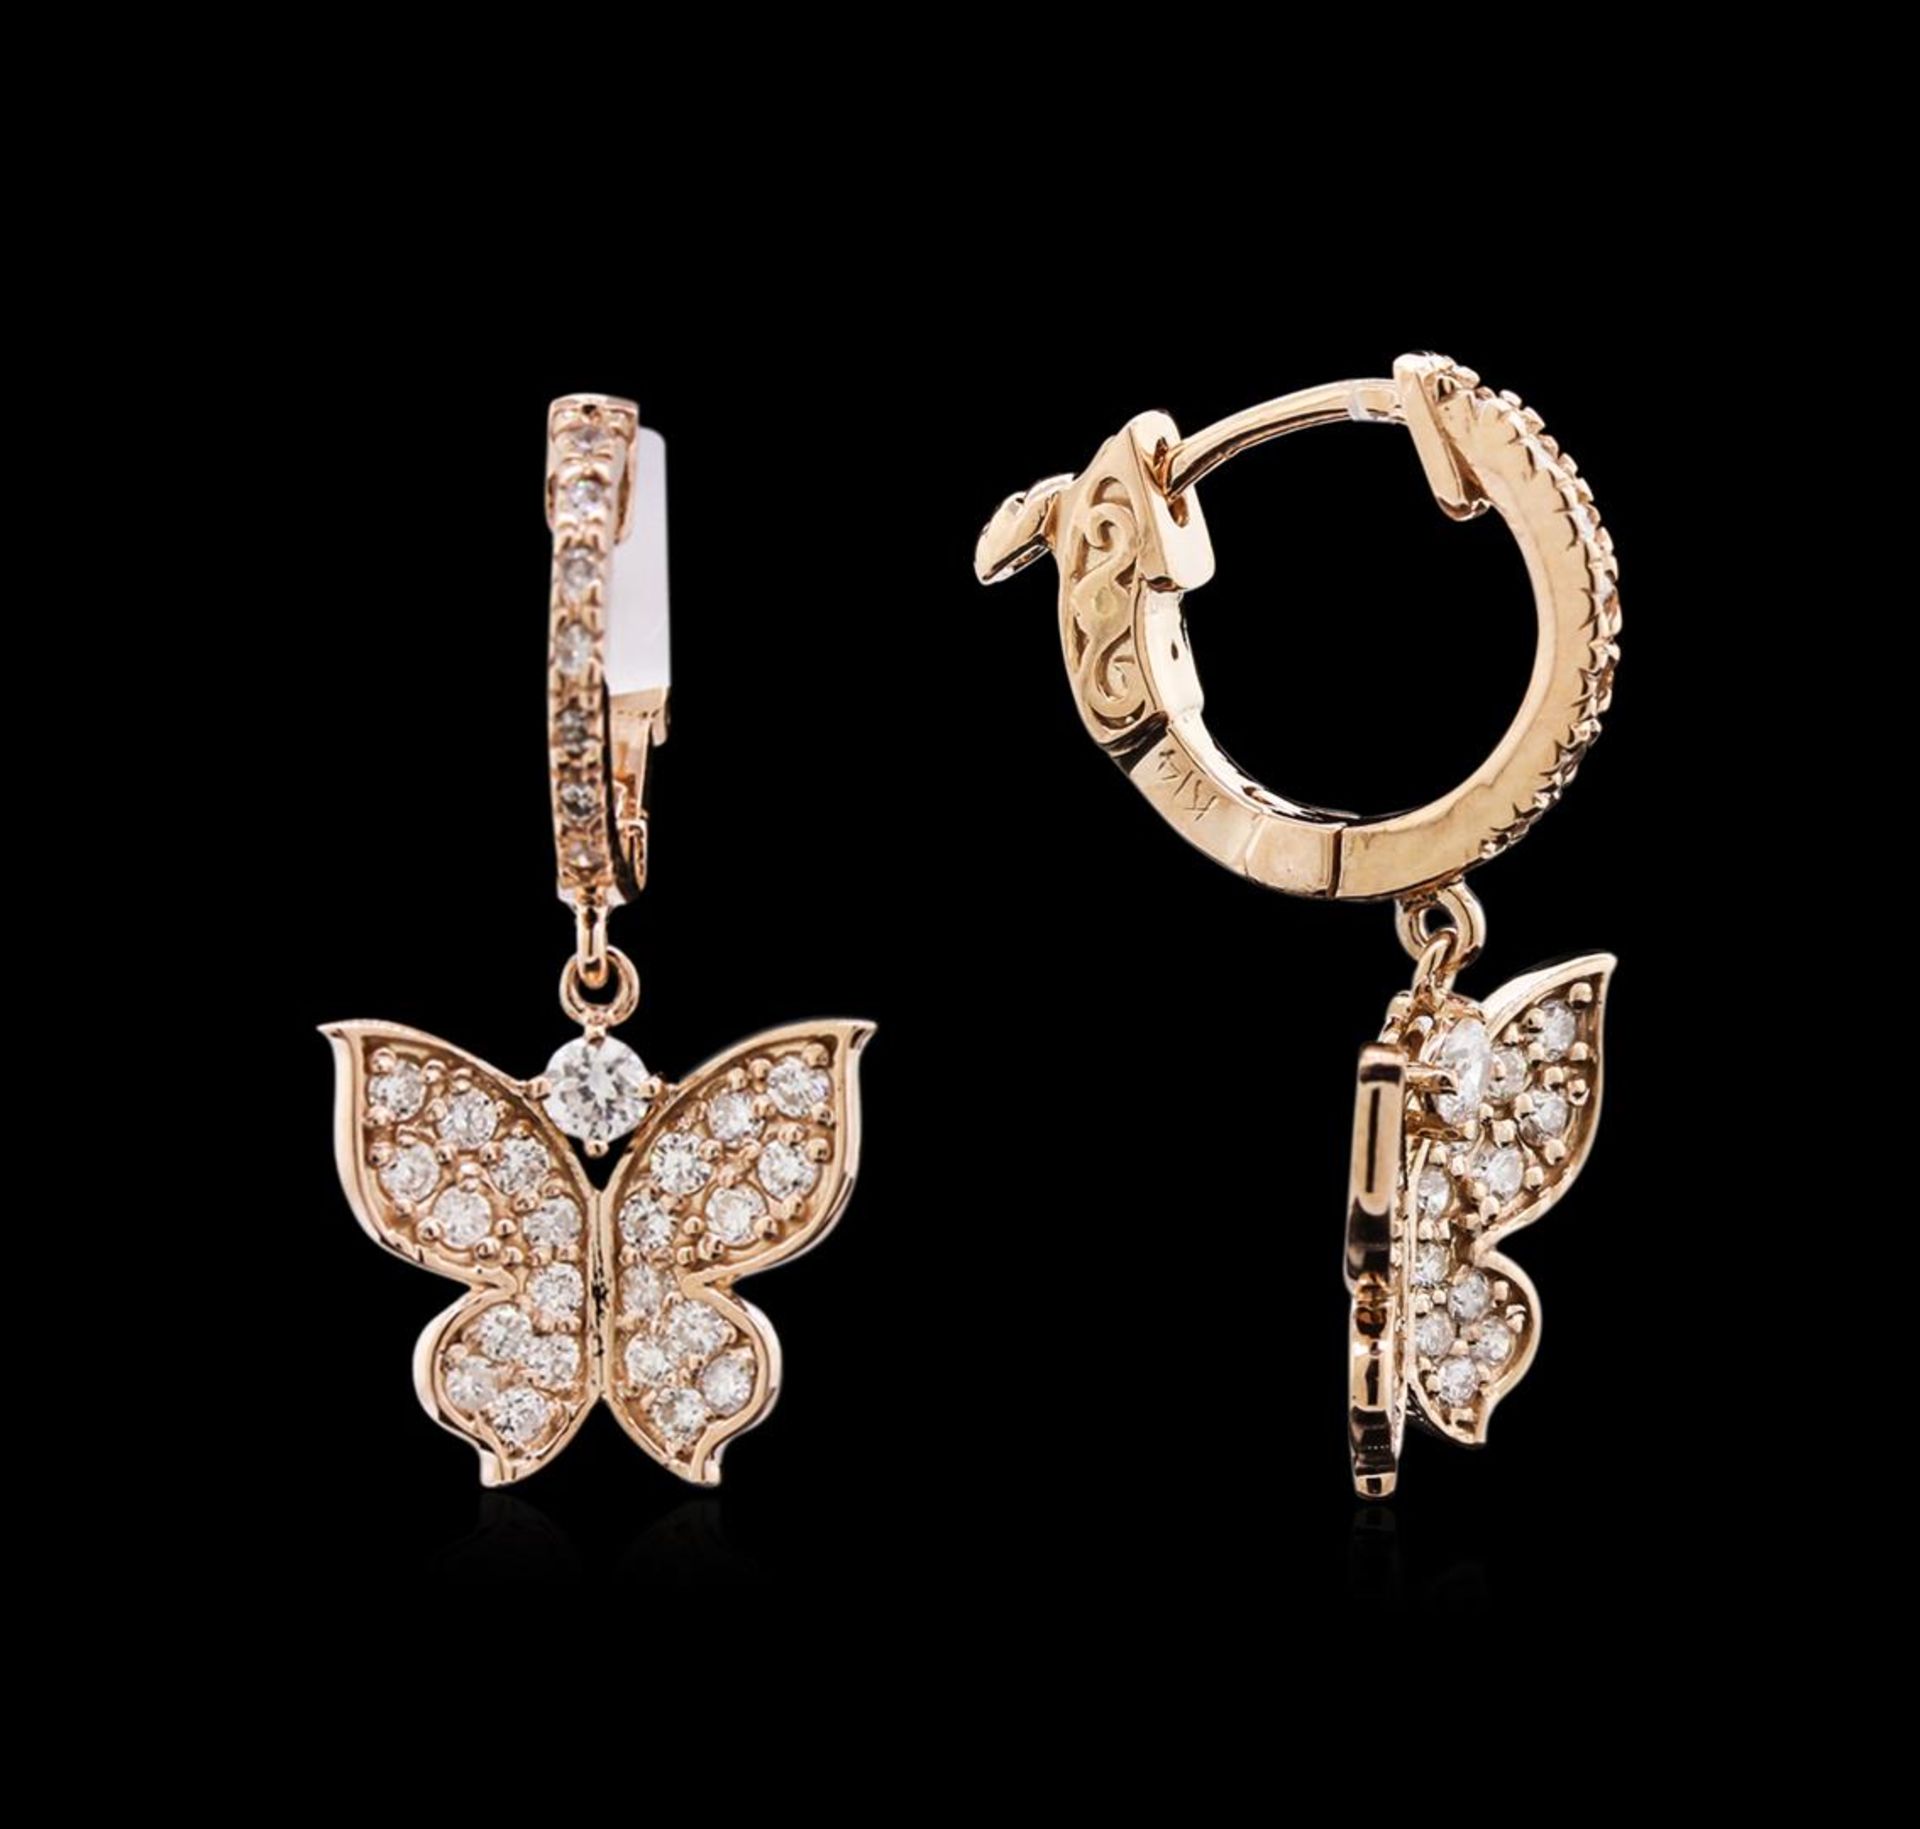 0.73 ctw Diamond Earrings - 14KT Rose Gold - Image 2 of 2